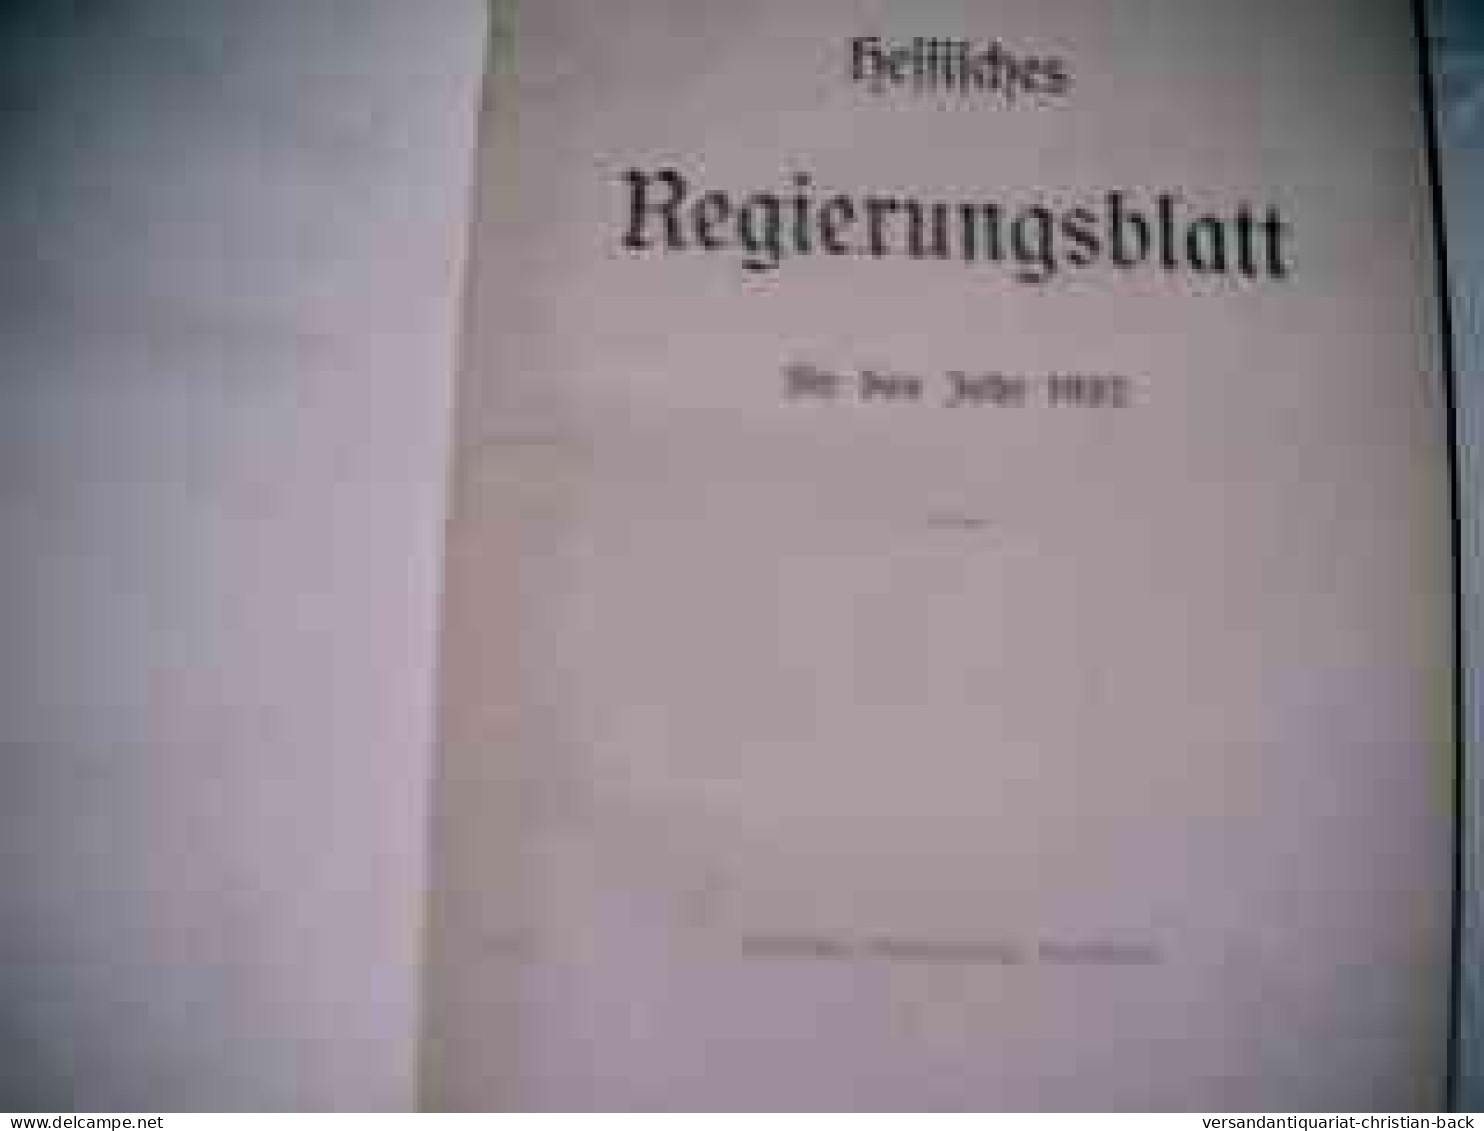 Hessisches Regierungsblatt Für Das Jahr 1937 - Diritto